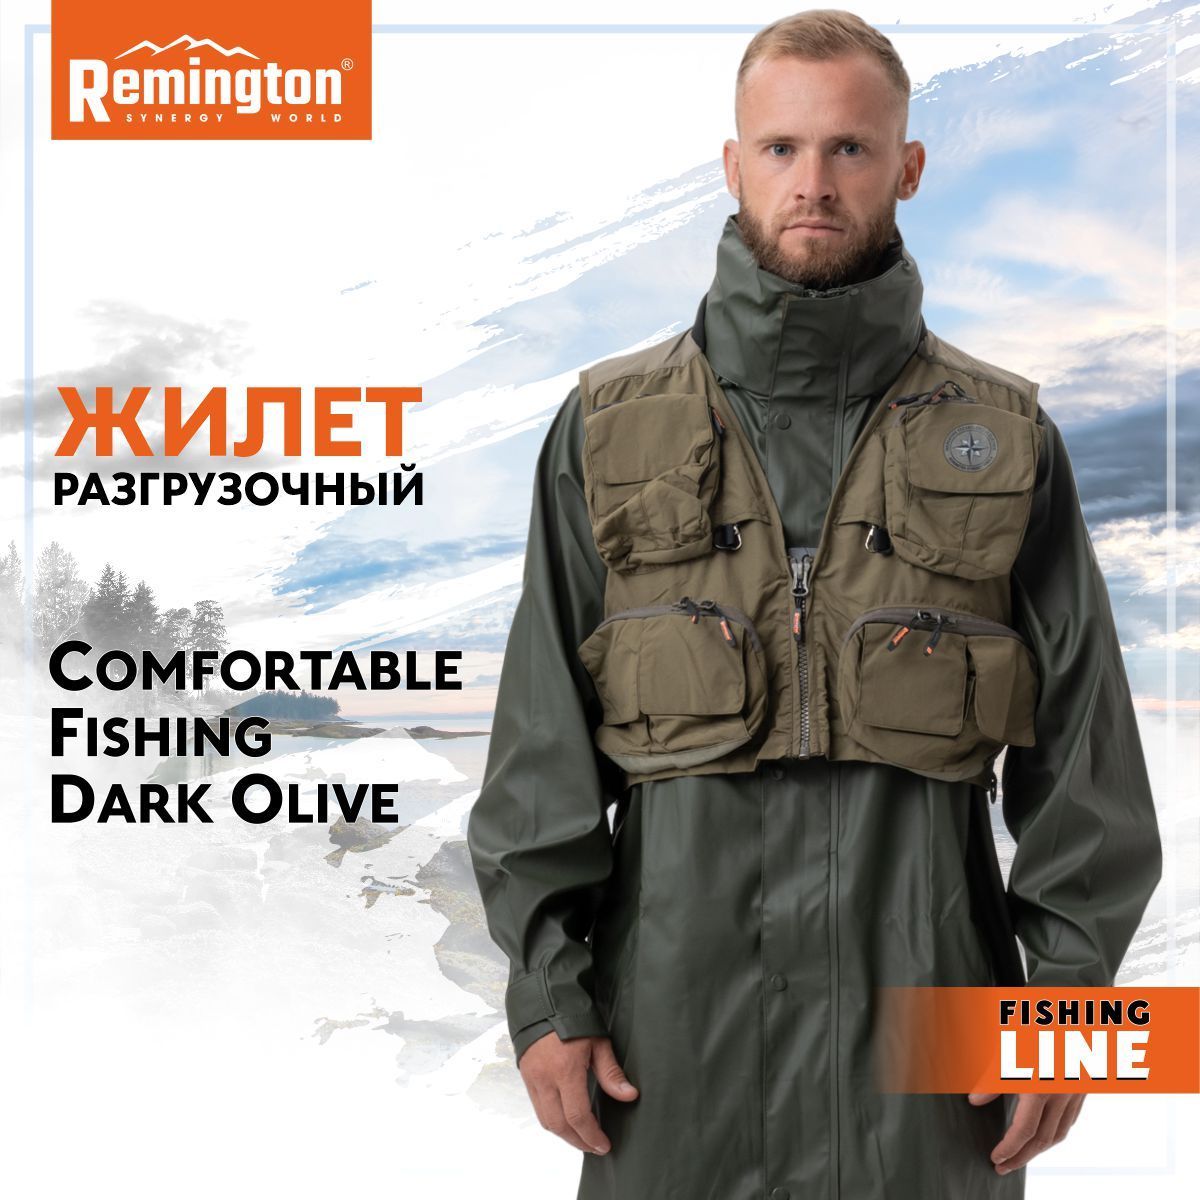 Жилет для рыбалки и охоты Remington, размер 48, 50, Лето, цвет бежевый -  купить по выгодной цене в интернет-магазине